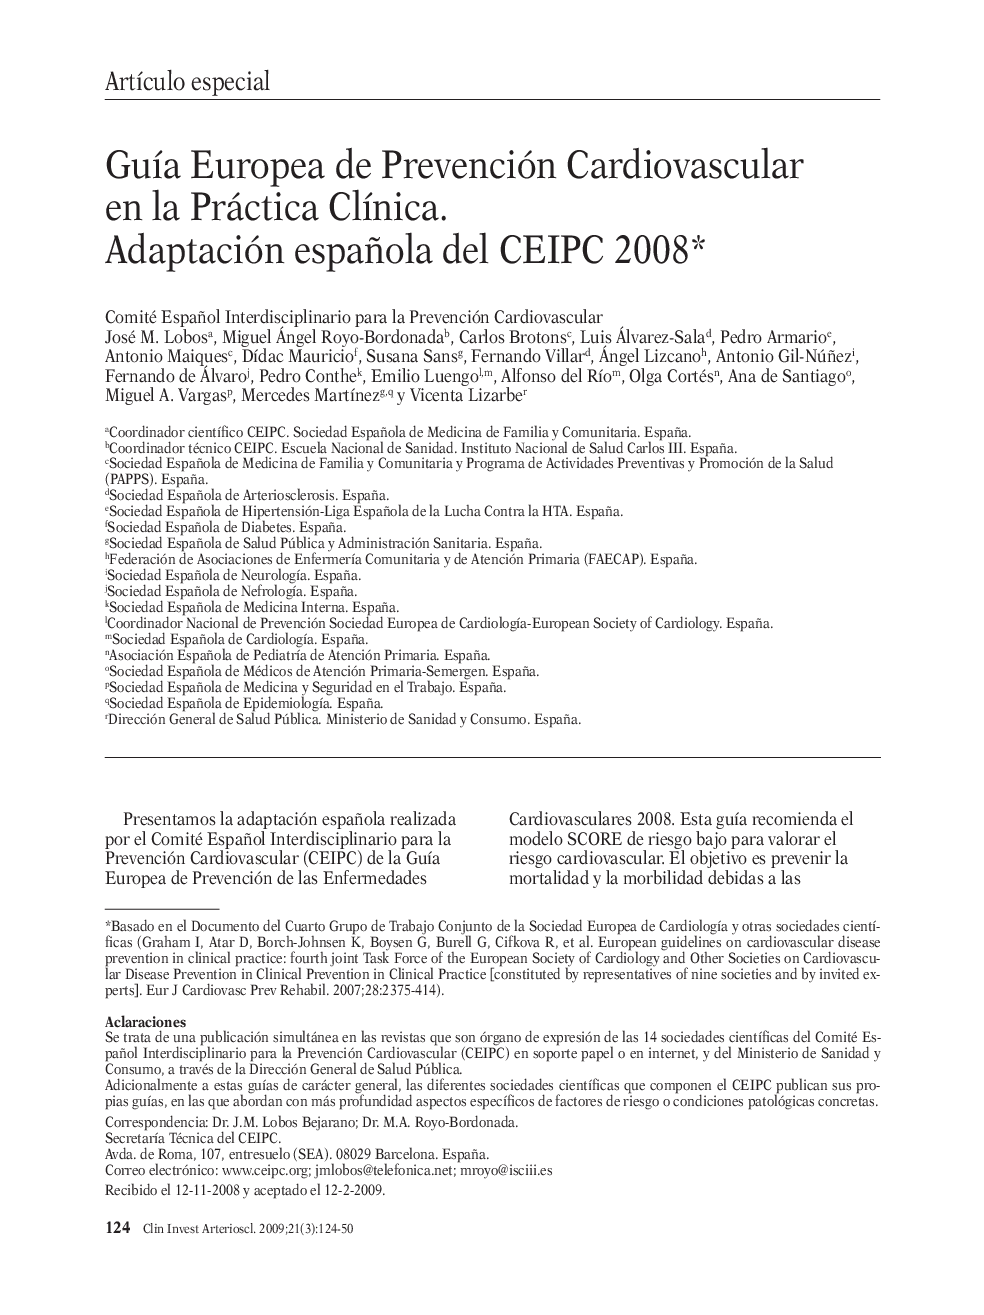 GuÃ­a Europea de Prevención Cardiovascular en la Práctica ClÃ­nica. Adaptación española del CEIPC 2008